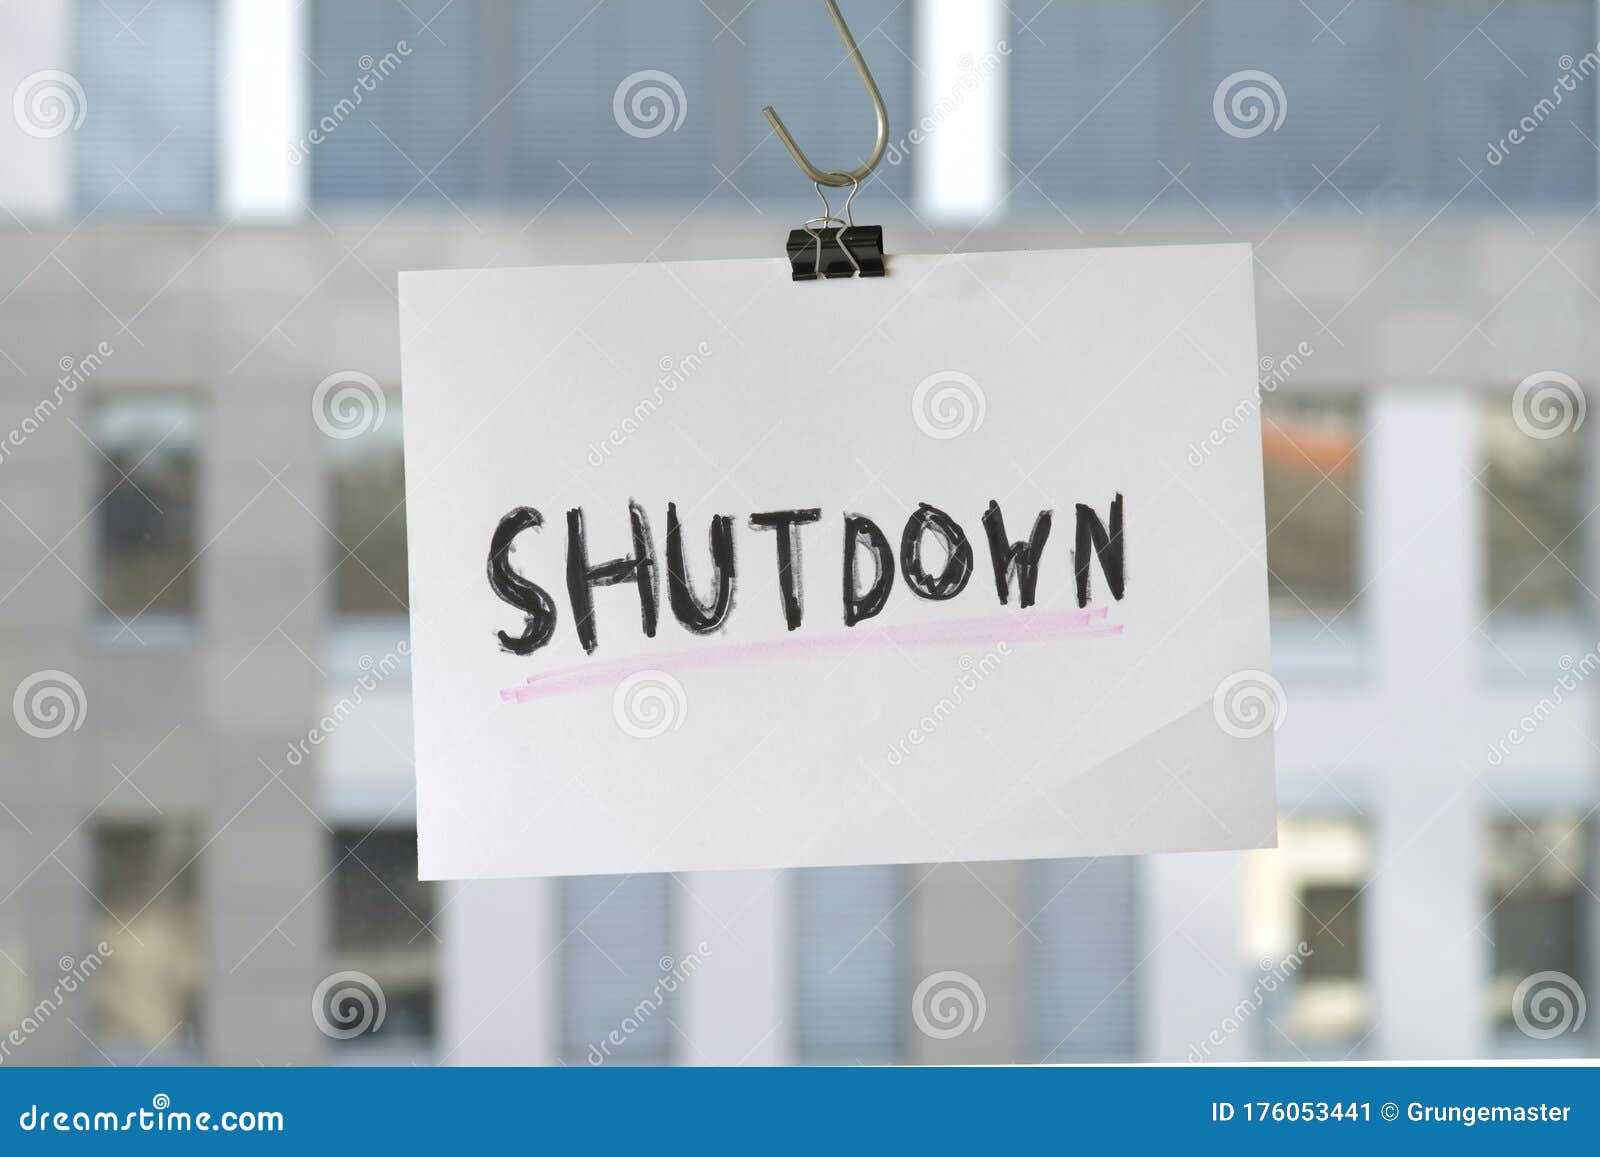 business shutdown , covid-19,corona virus epidemic